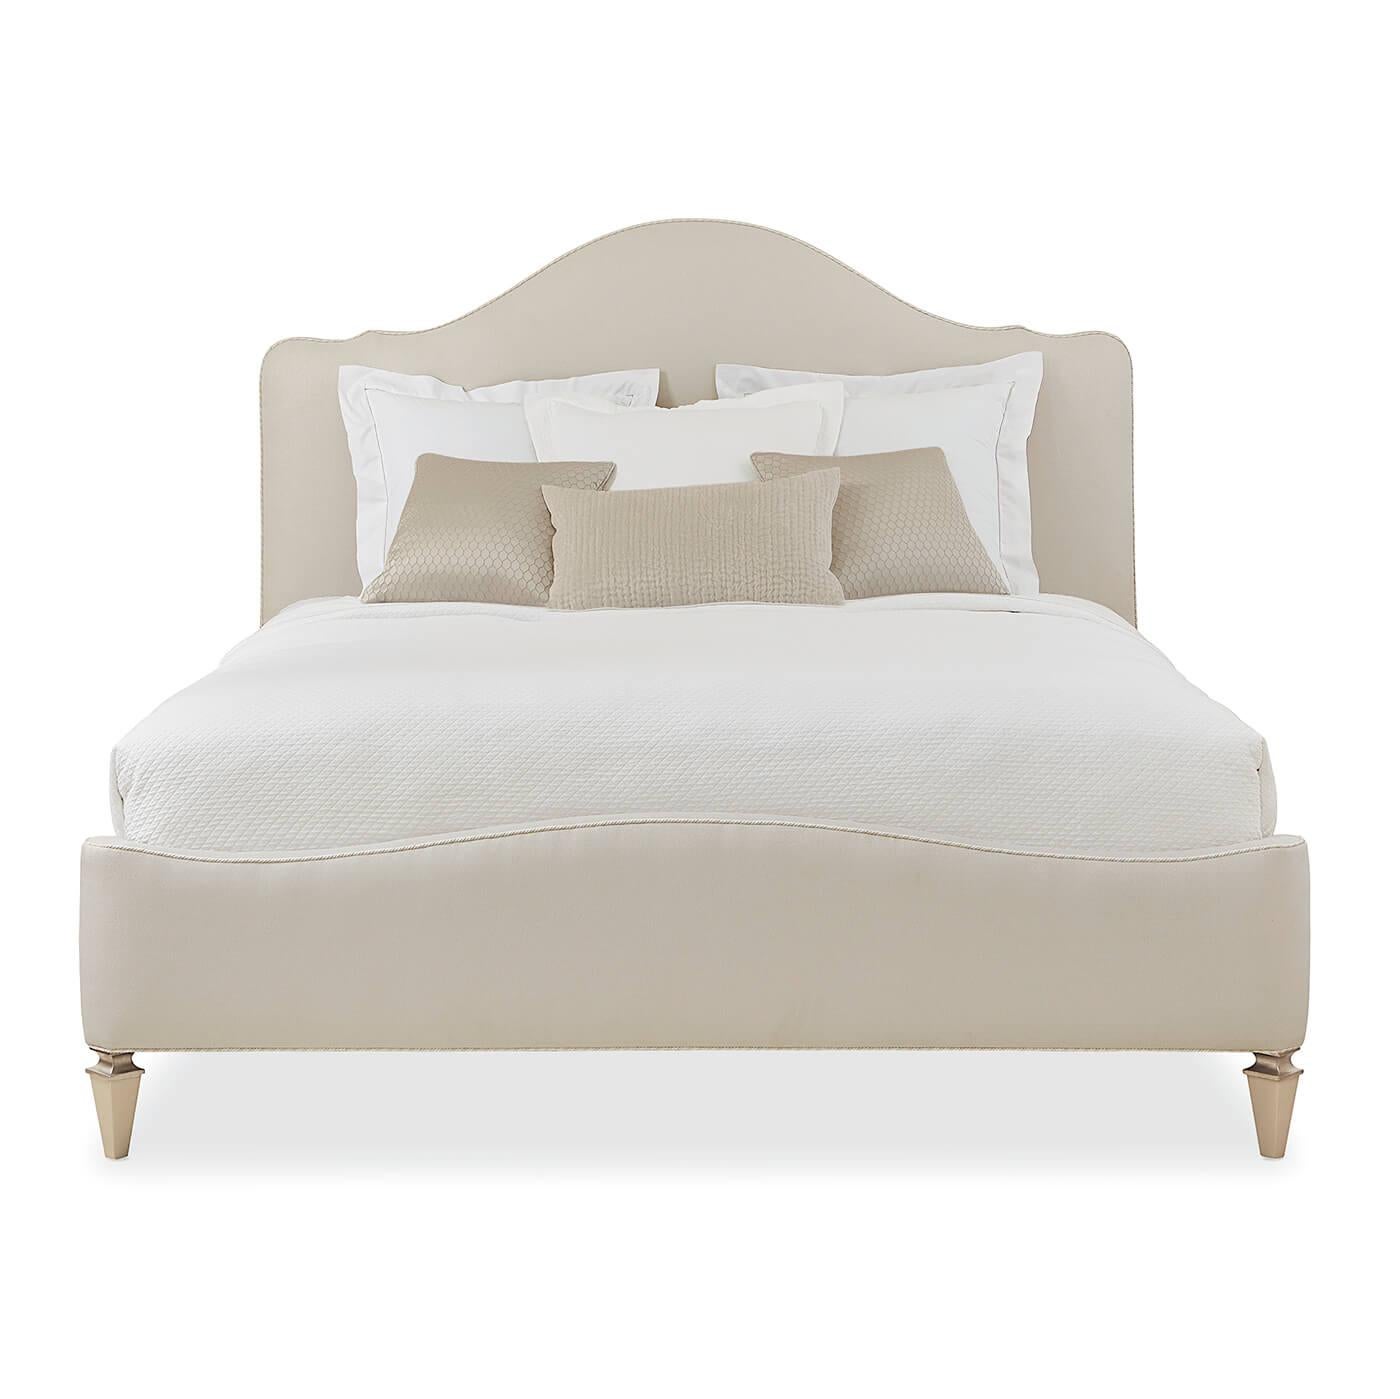 Un lit king anglais moderne à dos de chameau avec des pieds coniques carrés en bois apparent dans des tons riches de Sparkling Argent. La tête et le pied de lit de ce lit glamour sont recouverts d'un tissu luxueux et agrémentés de cordons